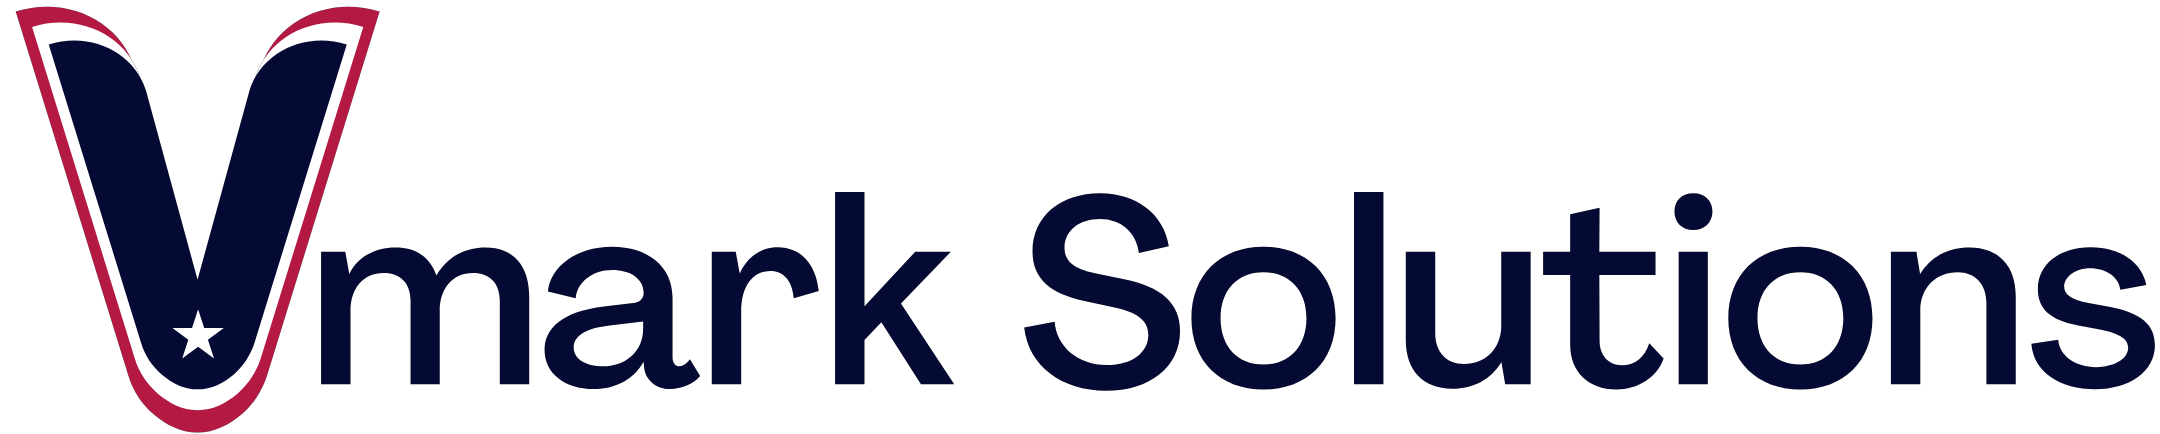 Vmark Solutions logo